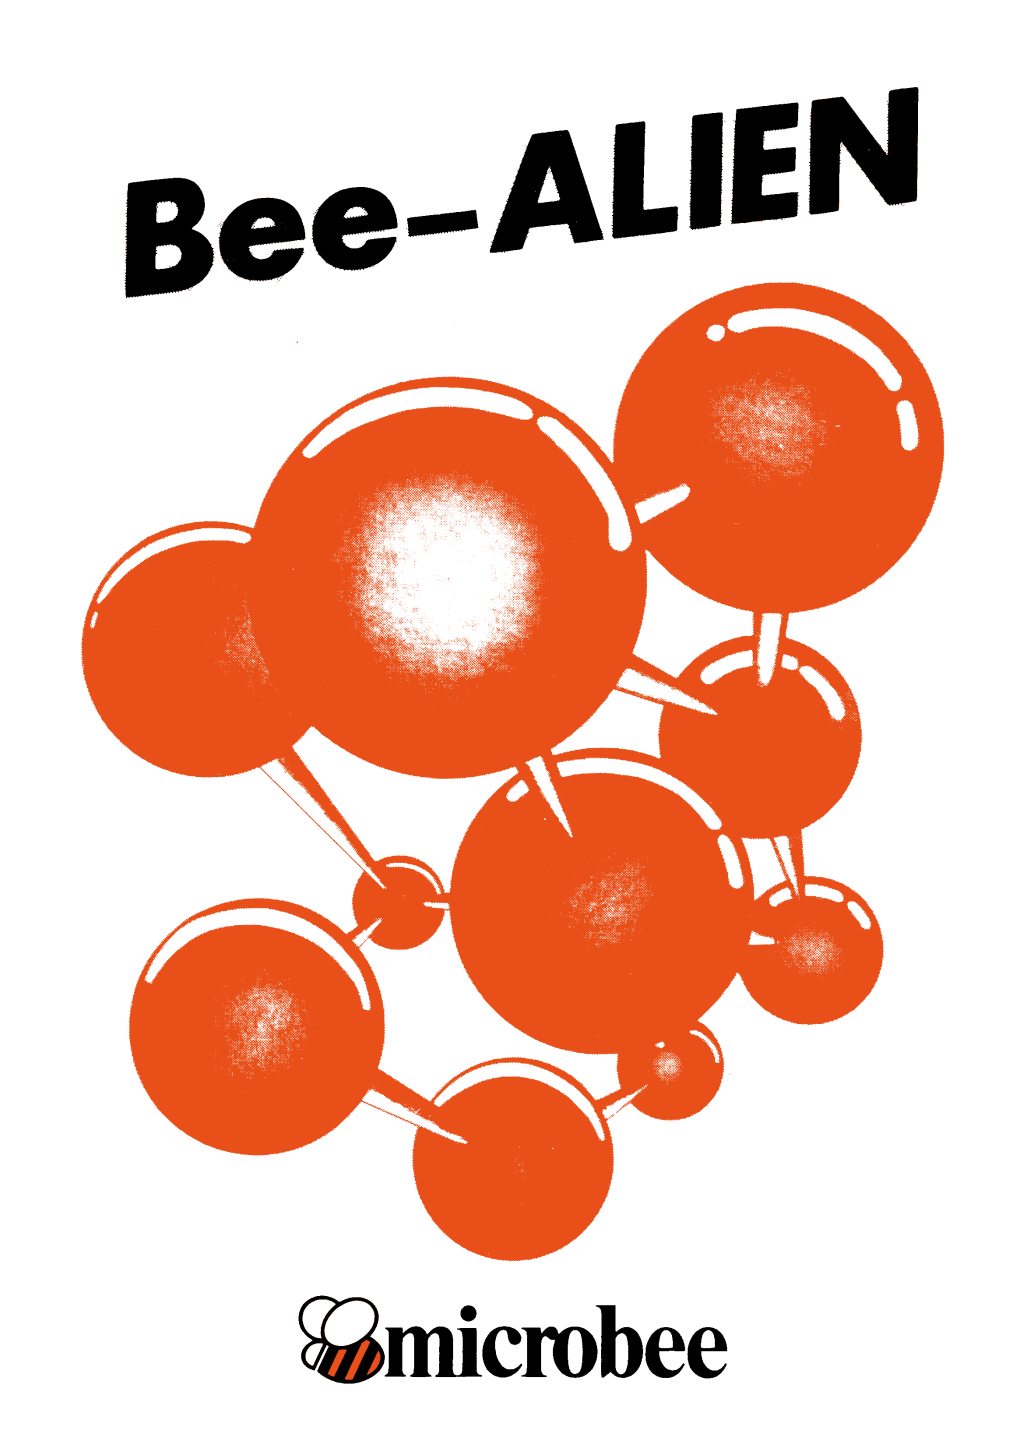 Microbee Bee—ALIEN